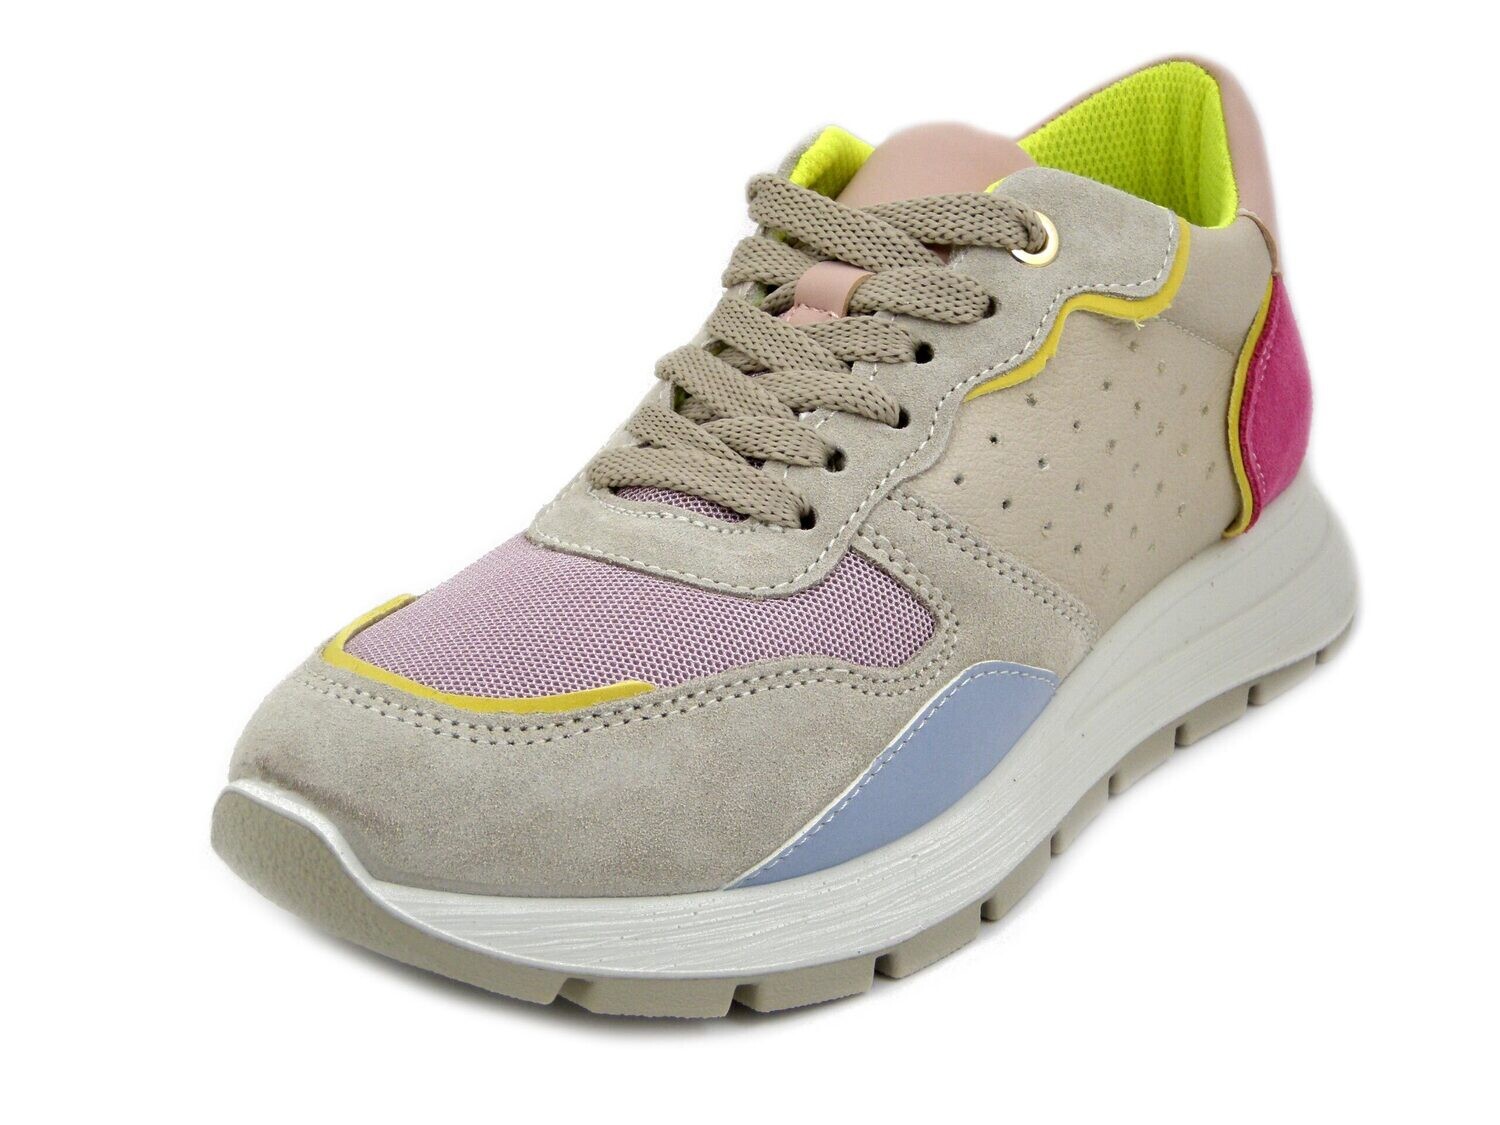 Sneakers Donna in Pelle Beige e Multicolore, Zeppa Interna, Sottopiede Estraibile, IMAC - 556760